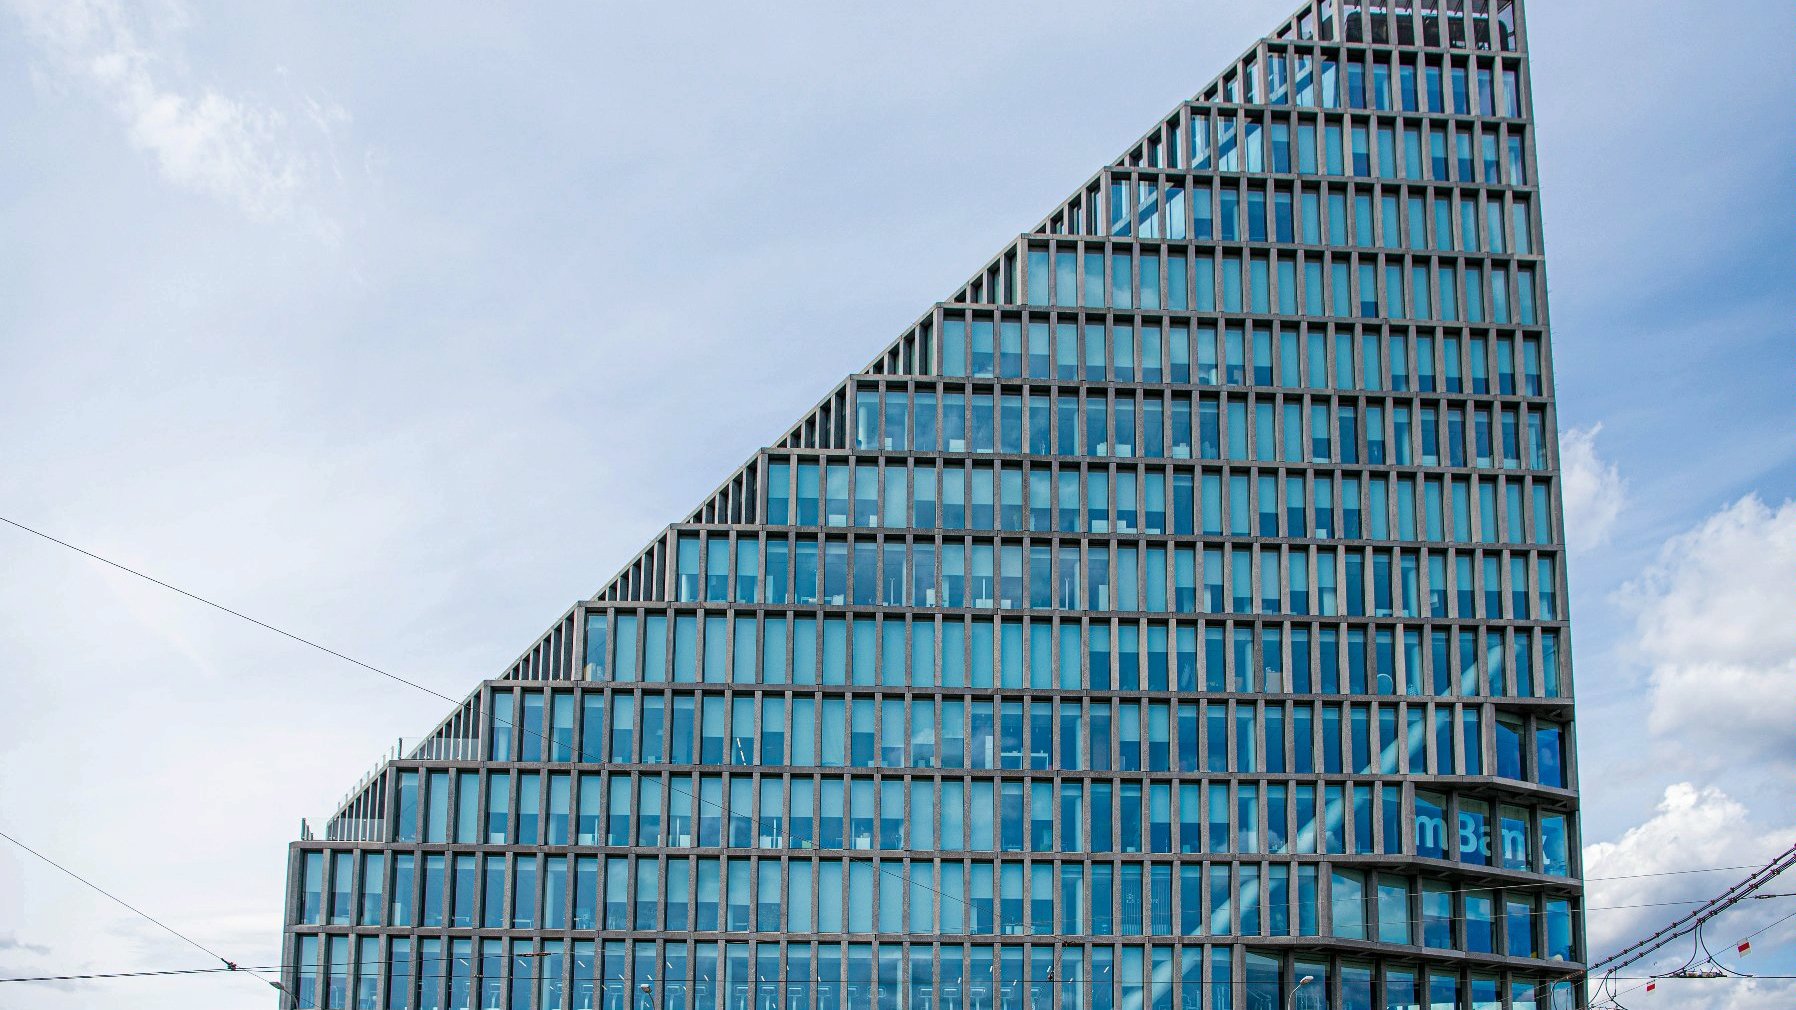 Galeria zdjęć przedstawia wieżowiec biurowy o szklanej elewacji opartej o szare betonowe słupy.